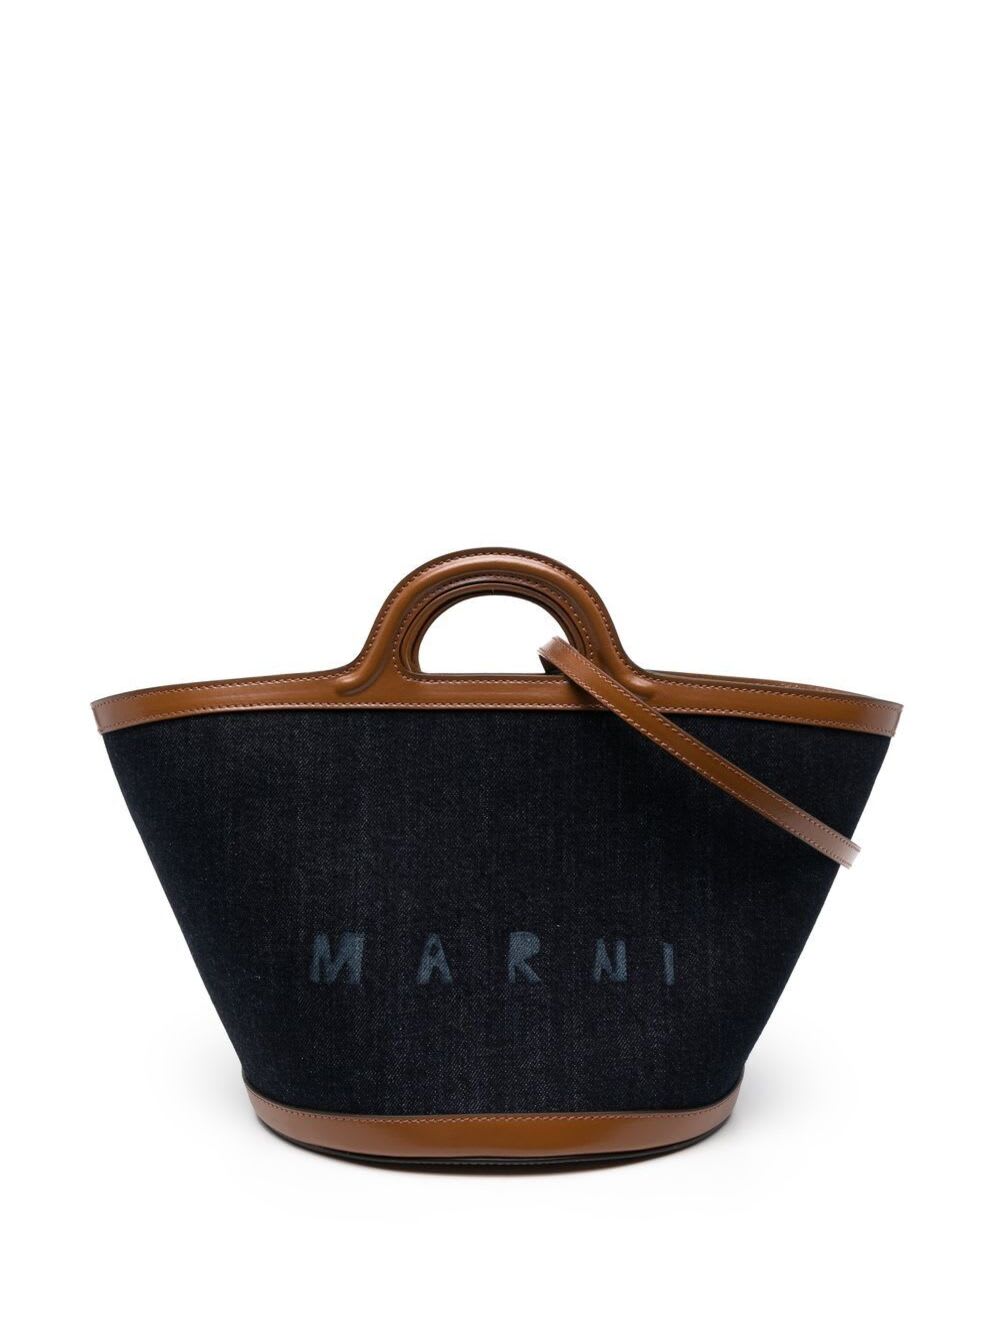 Tropicalia Denim And Leather Handbag With Logo Marni Woman